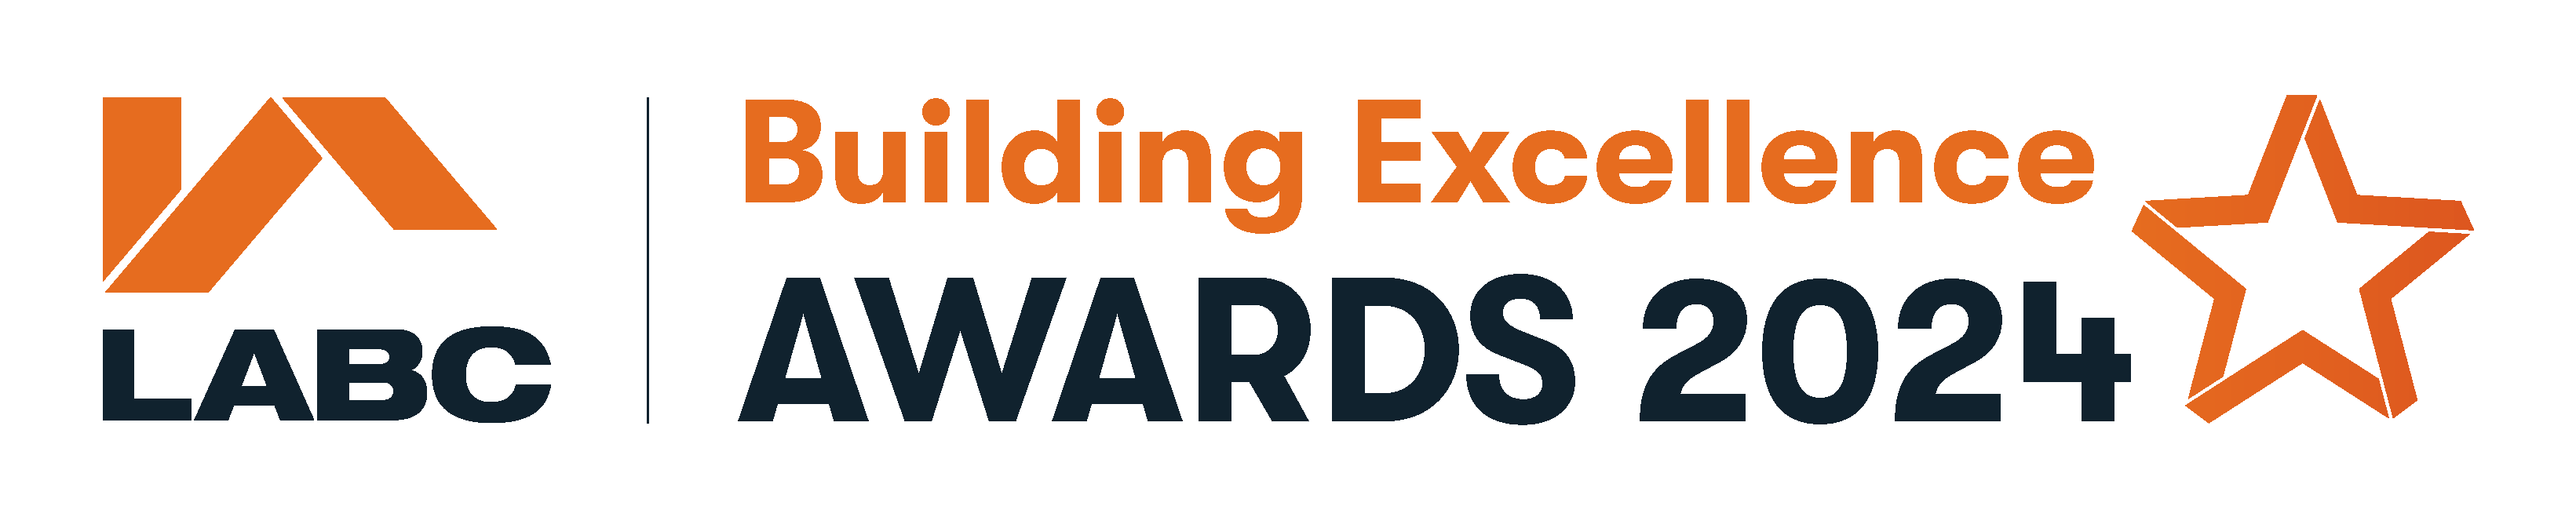 LABC Building Excellence Awards 2024 entry form LABC